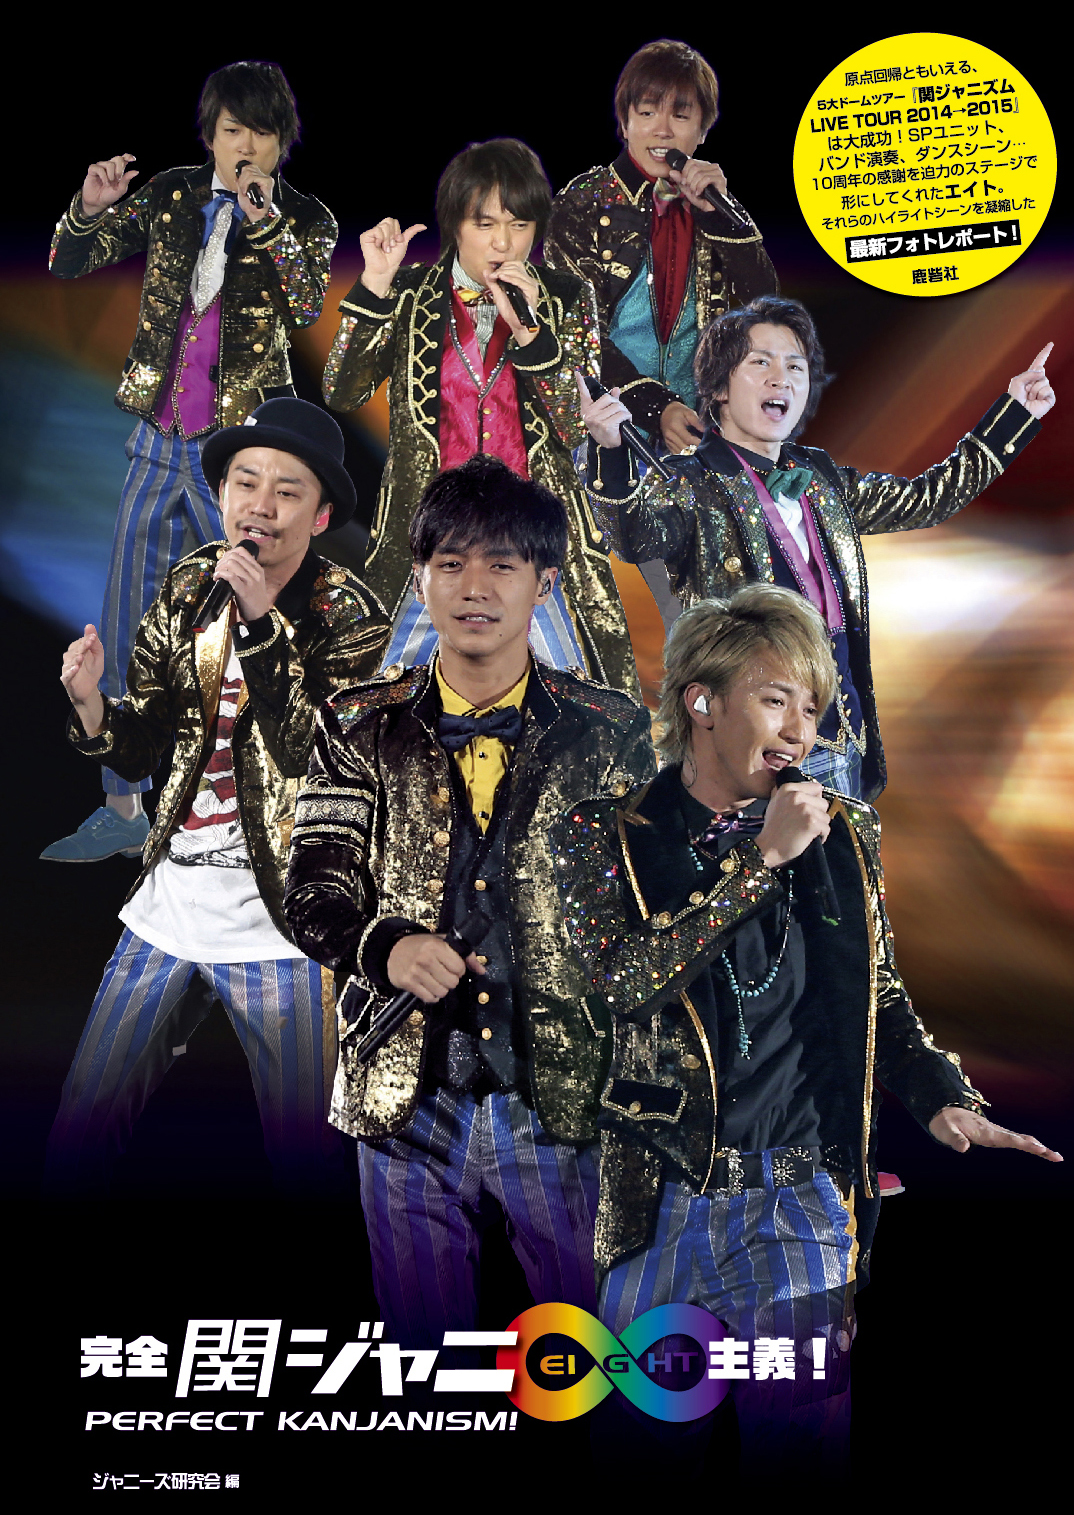 関ジャニ∞ 関ジャニズム LIVE TOUR 2014 2015 初回限定盤 - ミュージック